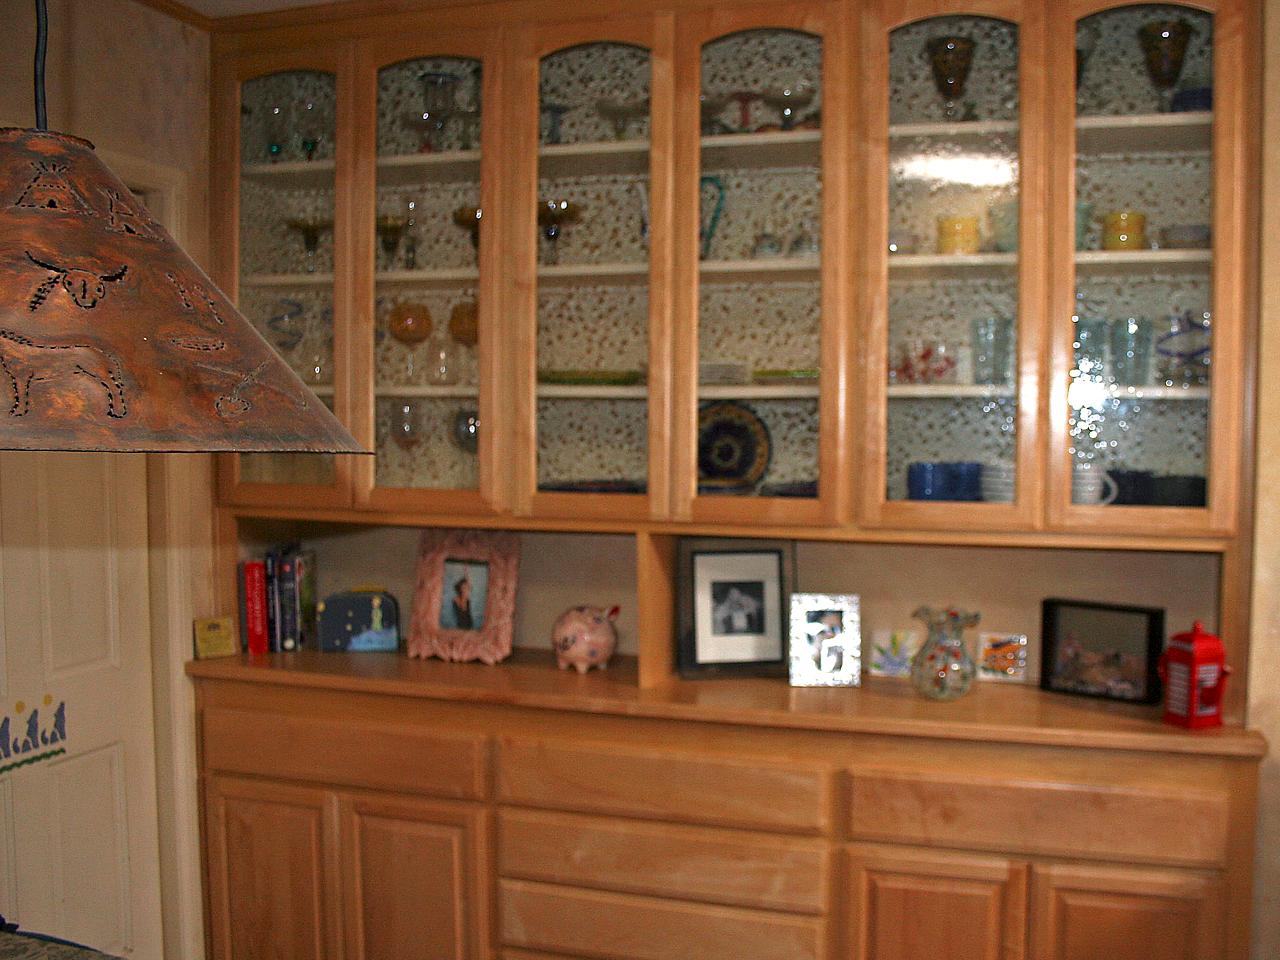 Installing Glass Panels In Cabinet, Menards Cabinet Doors In Stock